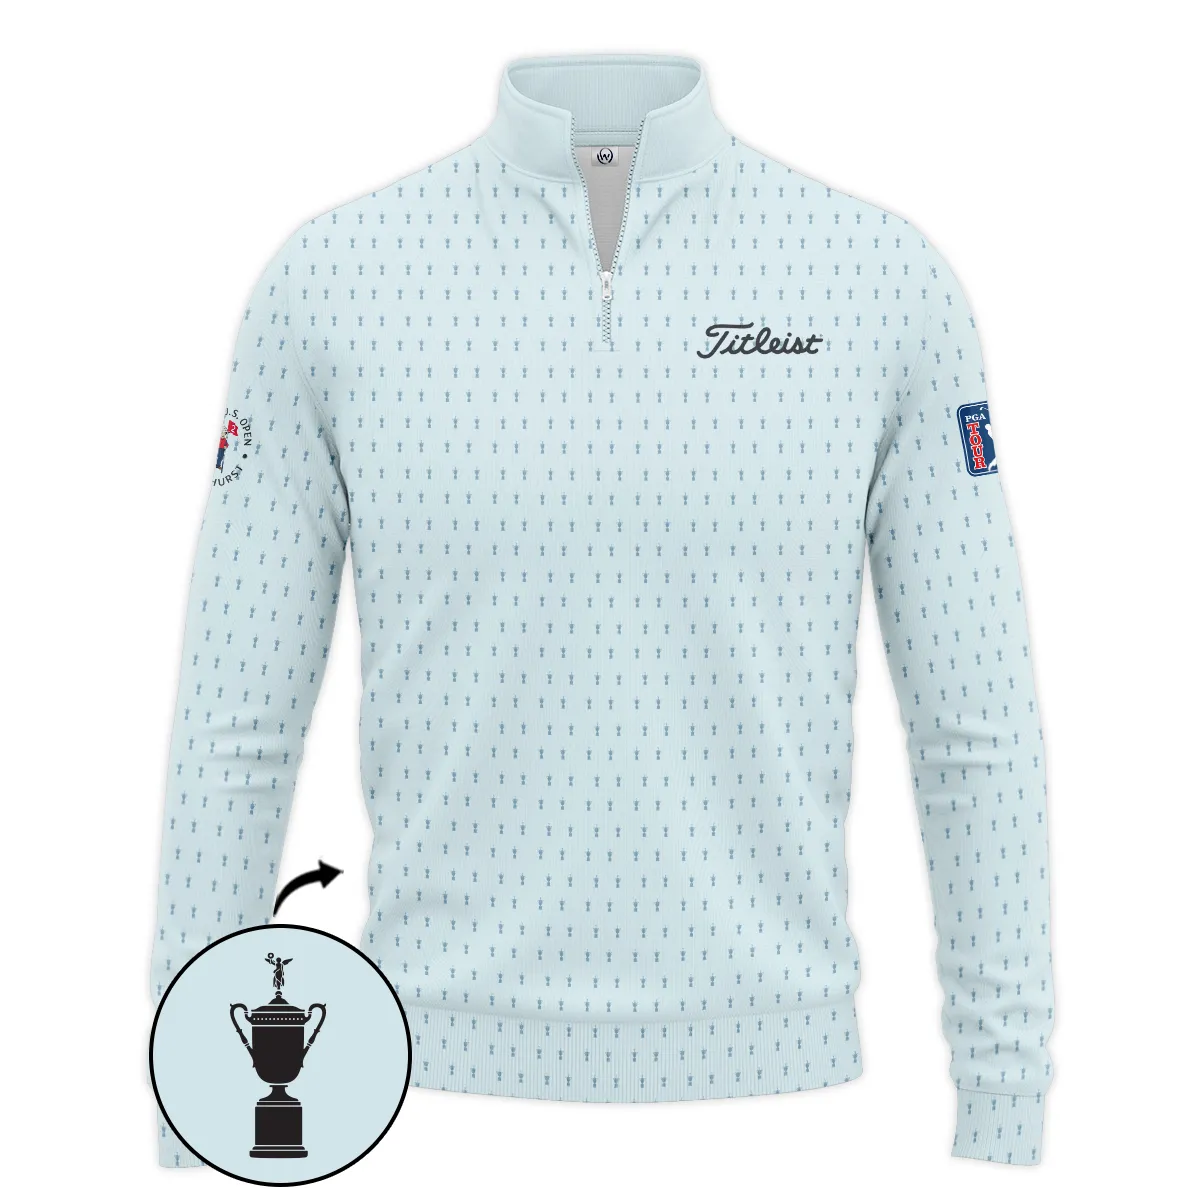 Golf Pattern Cup Light Blue Mix Green 124th U.S. Open Pinehurst Pinehurst Titleist Zipper Polo Shirt Style Classic